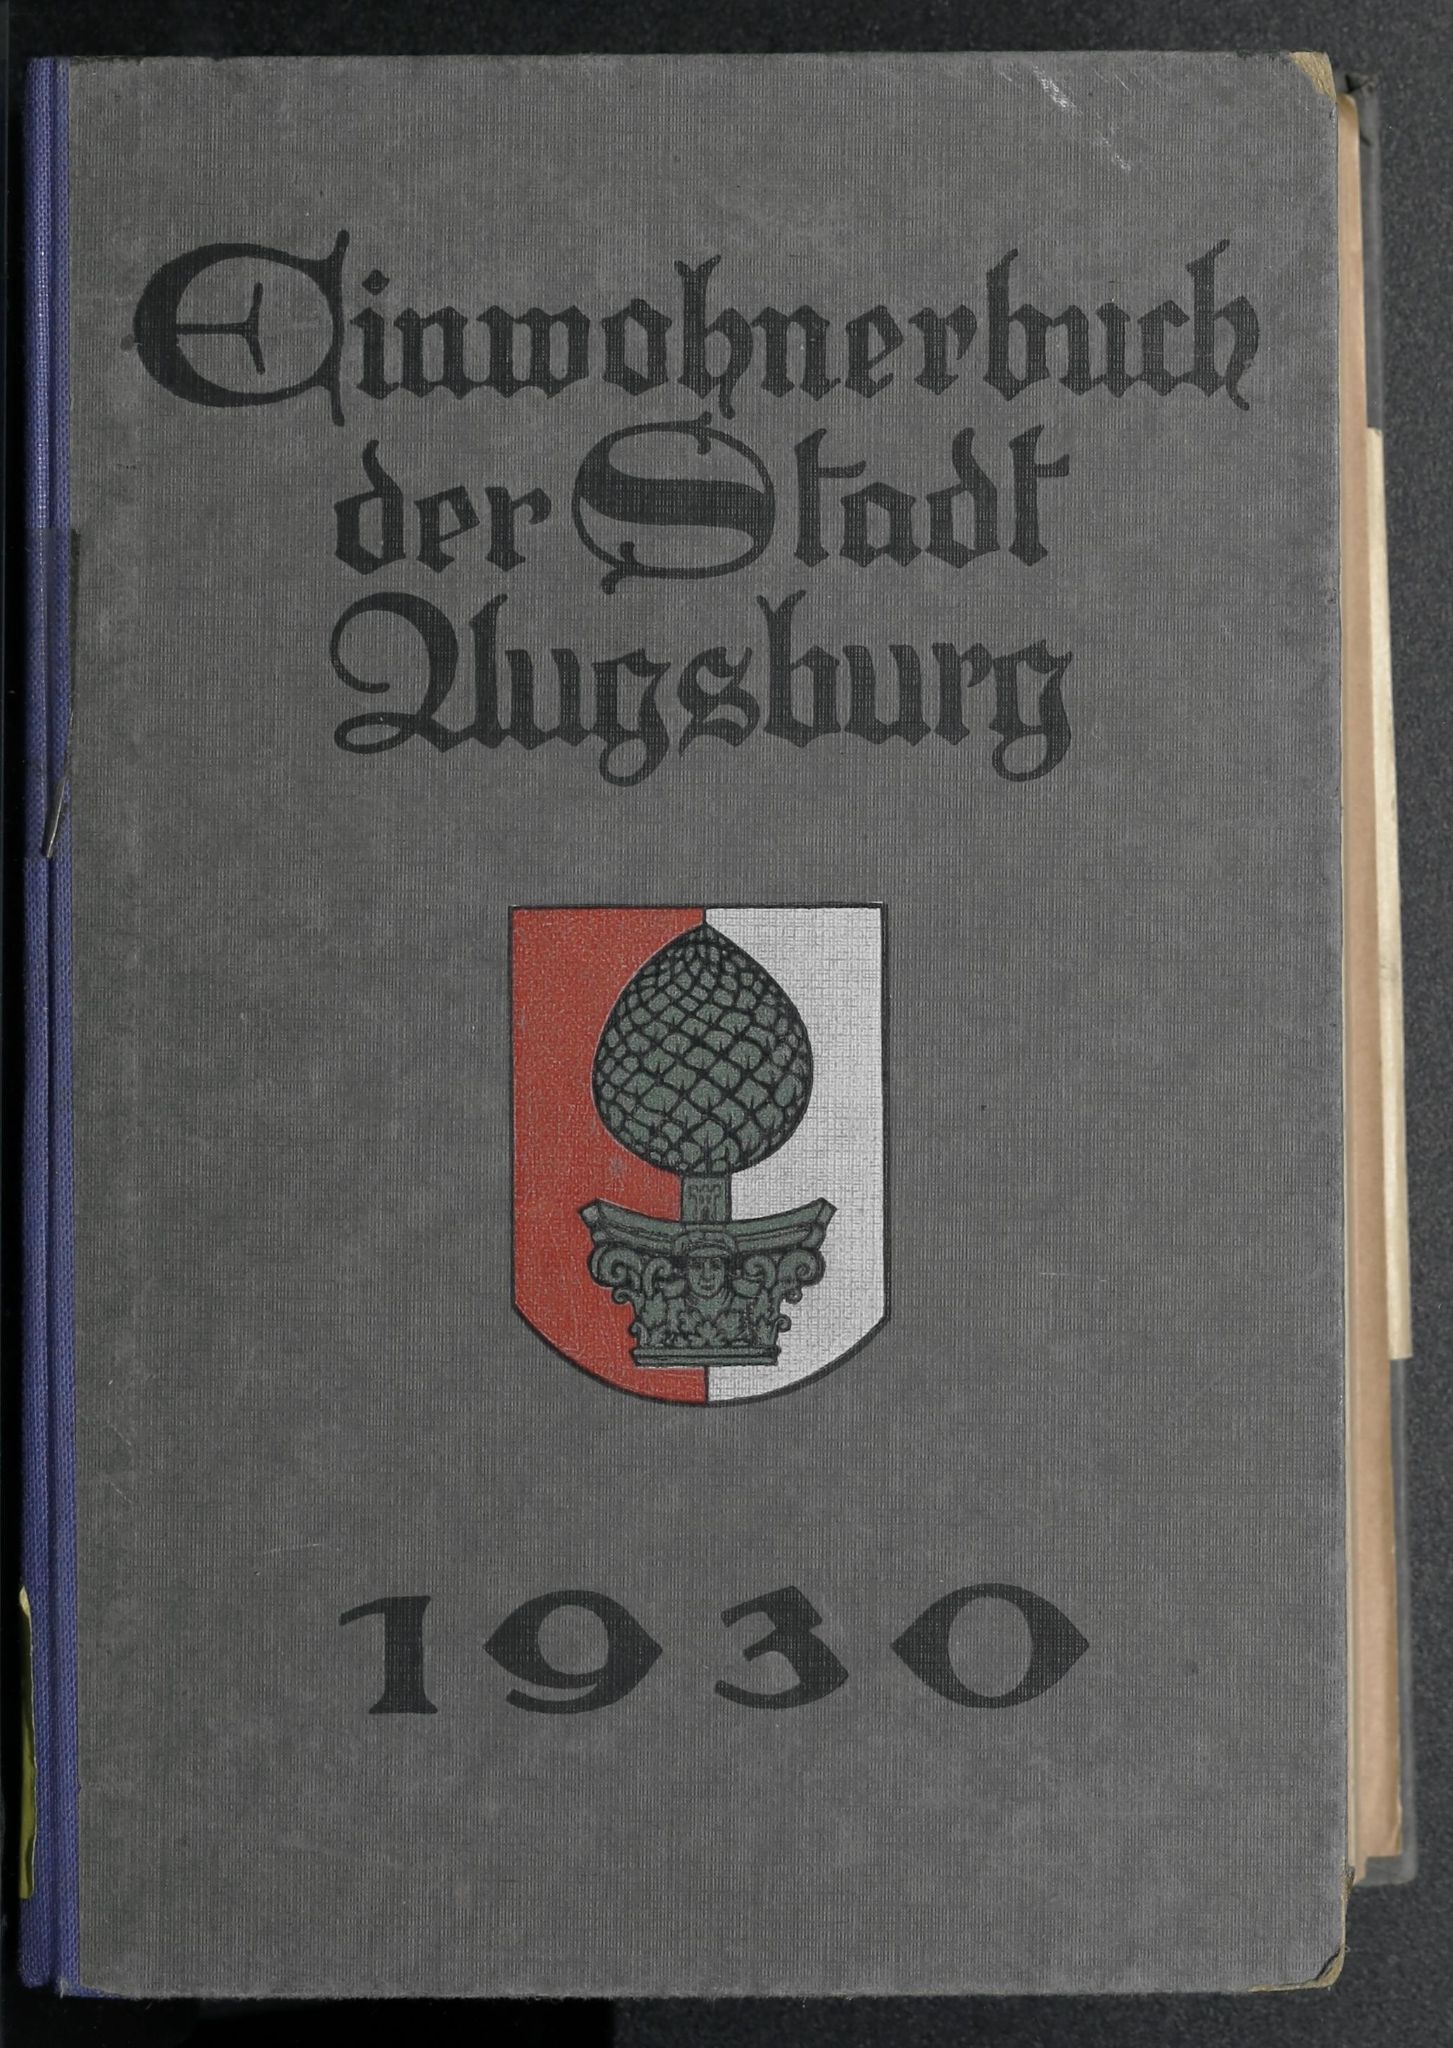 Einwohnerbuch der Stadt Augsburg 1930